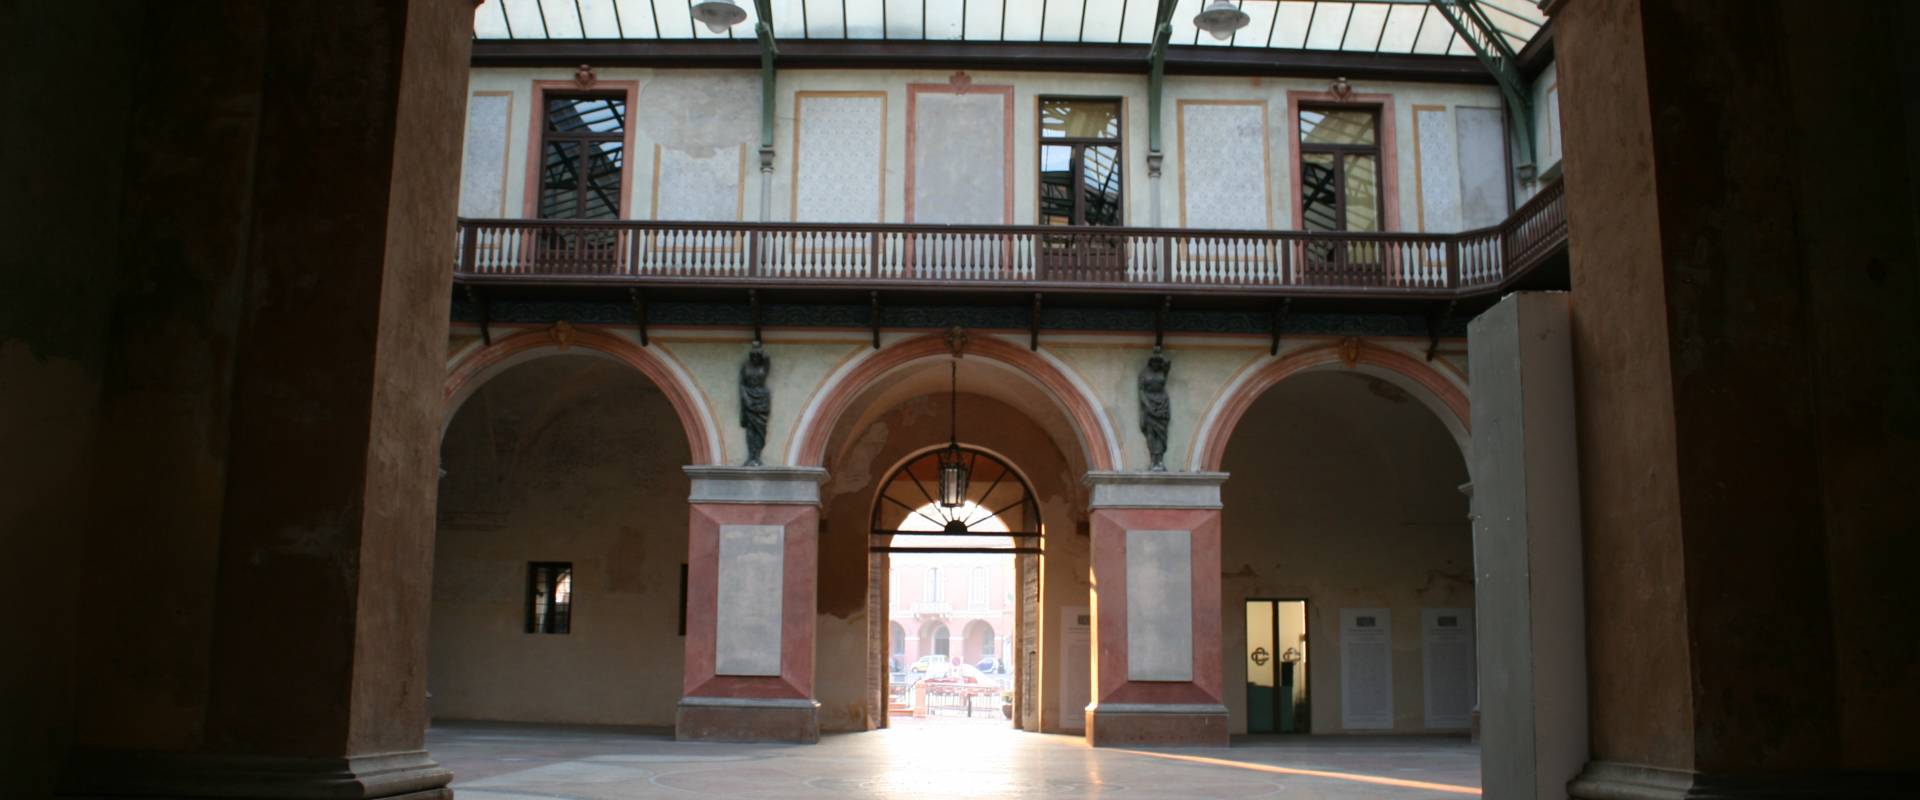 Cortile interno di palazzo ducale foto di Elesorez